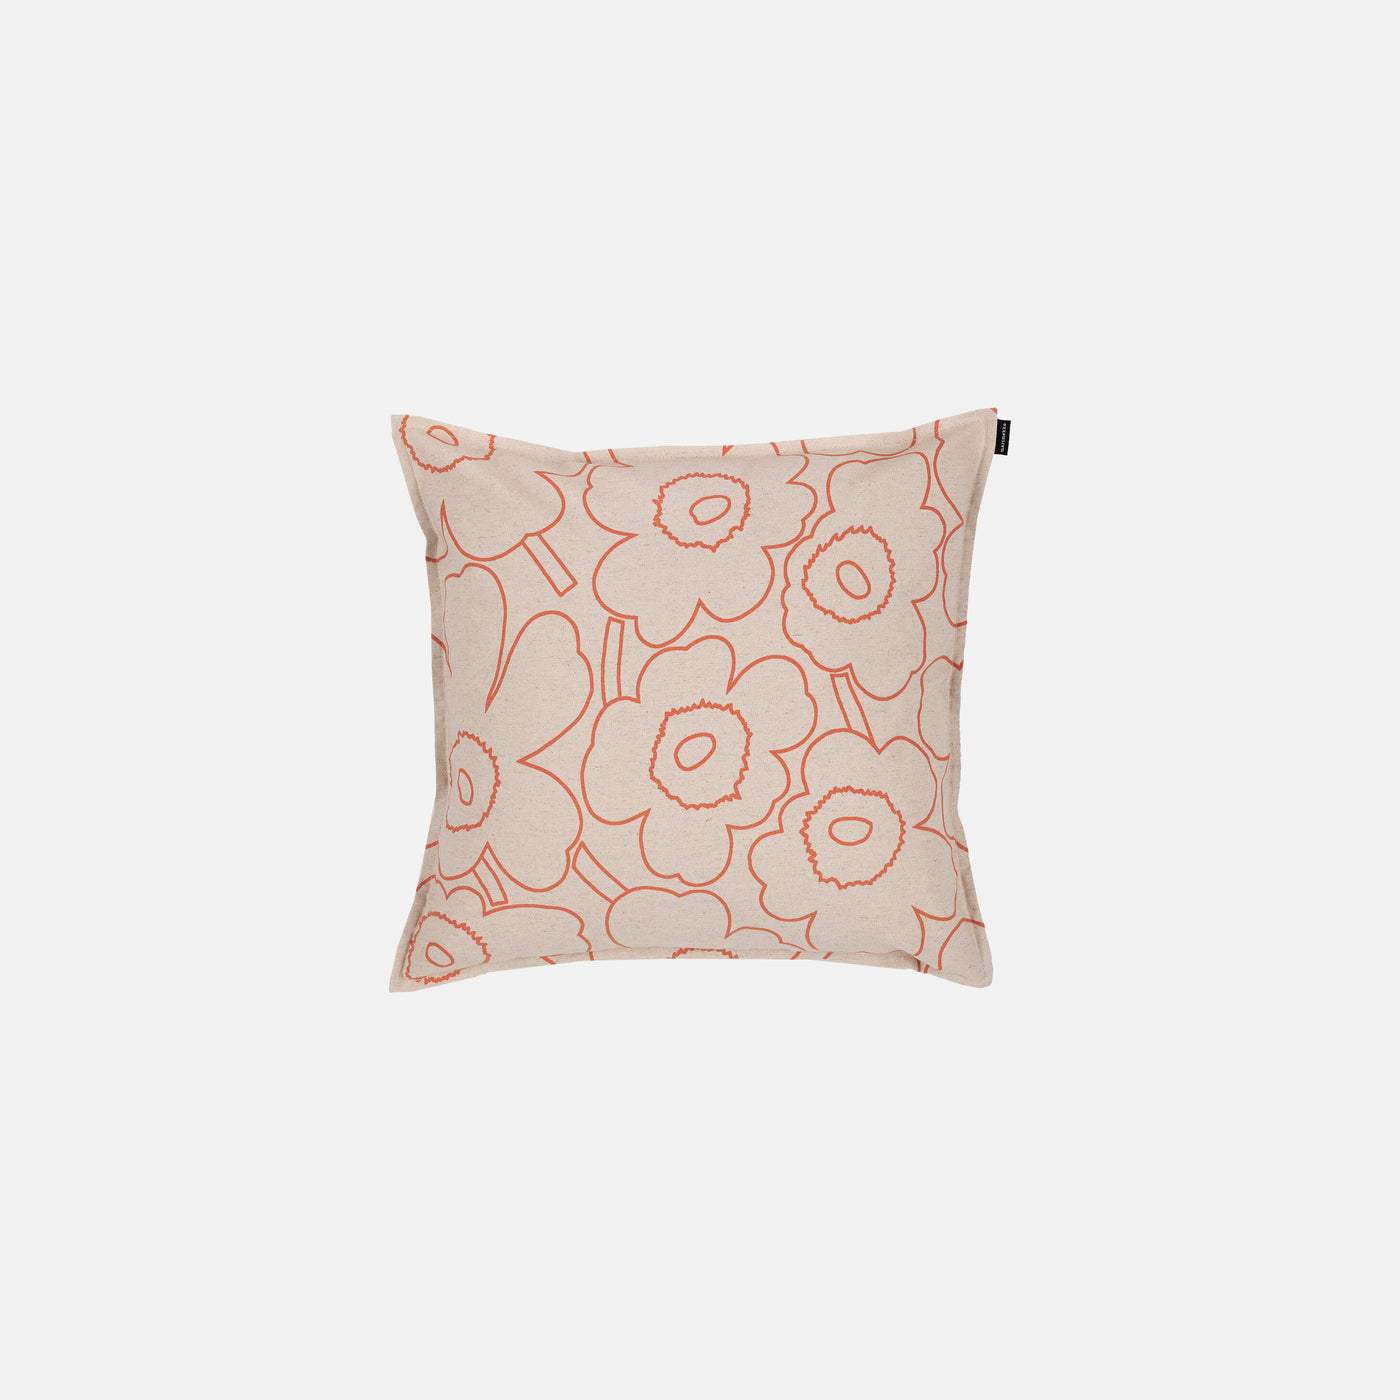 Pieni Piirto Unikko Cushion Cover 50x50 Cm